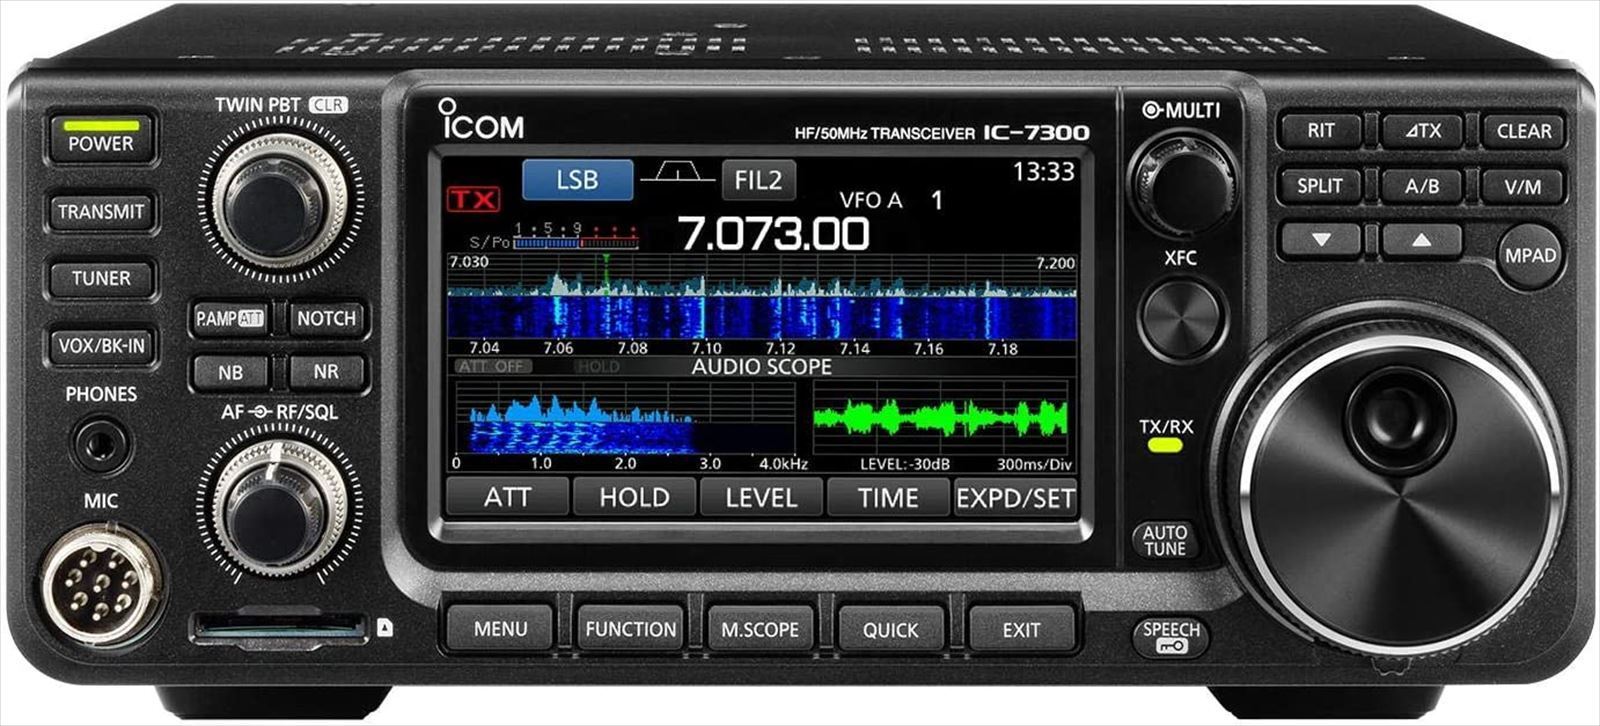 ICOM IC-7300 HF +50MHz SSB/CW/RTTY/AM/FM 100W Transceiver Japan NEW | eBay